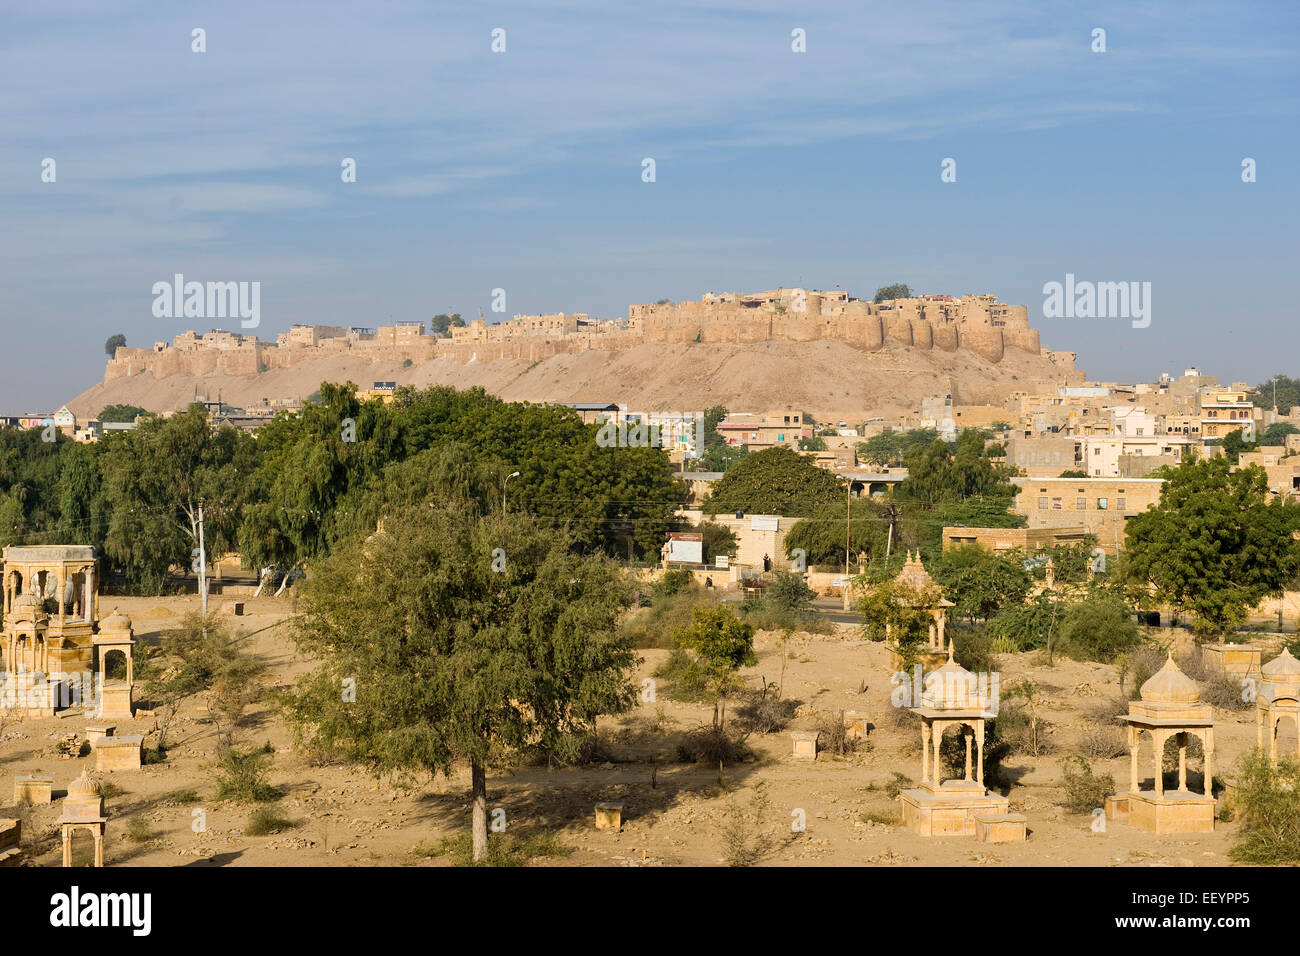 India, Rajasthan, Jaisalmer, landscape Stock Photo